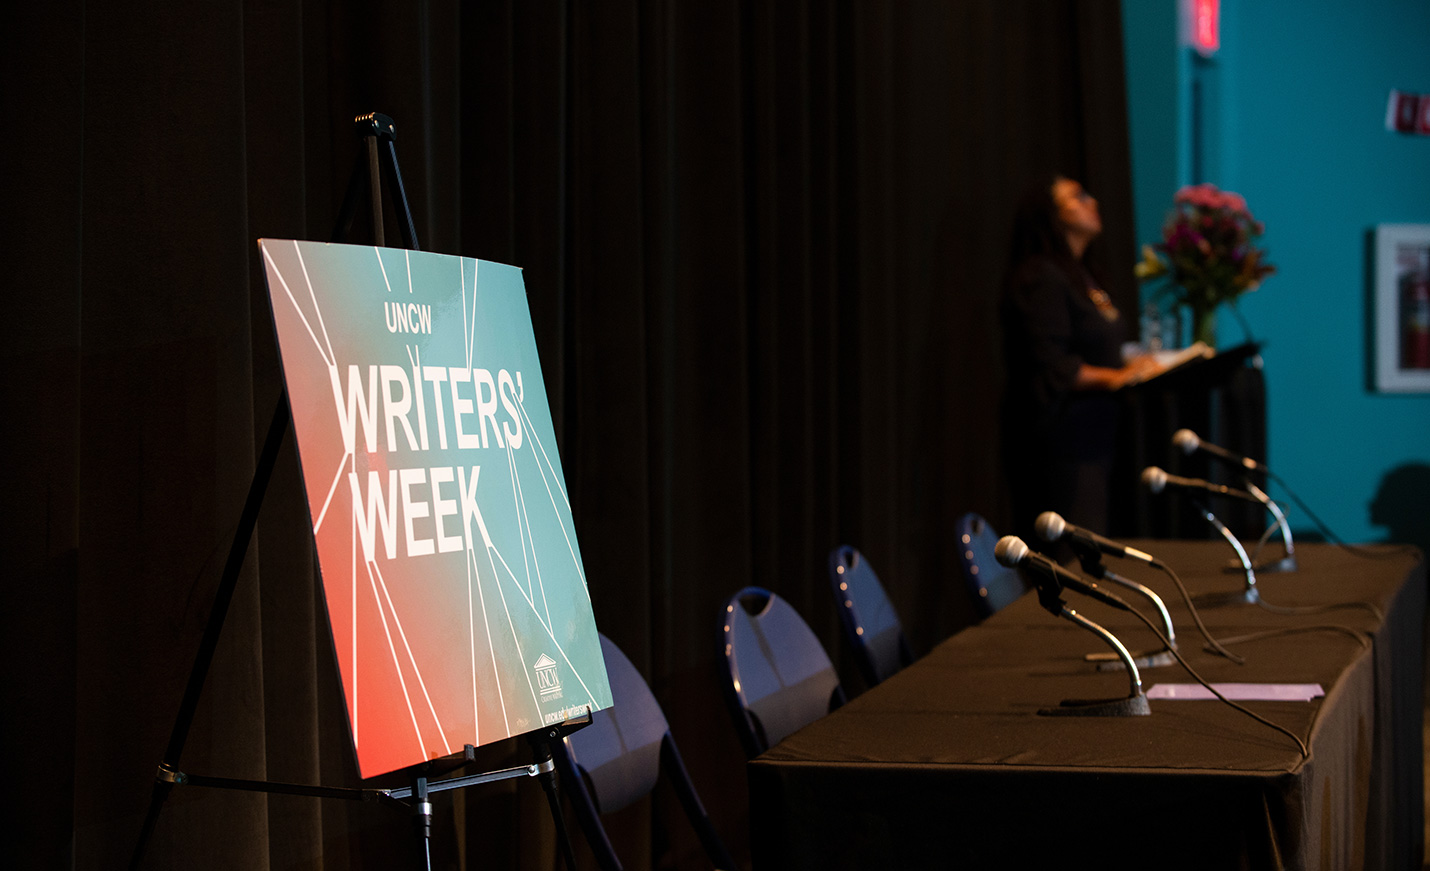 Writers' Week post on darkened stage